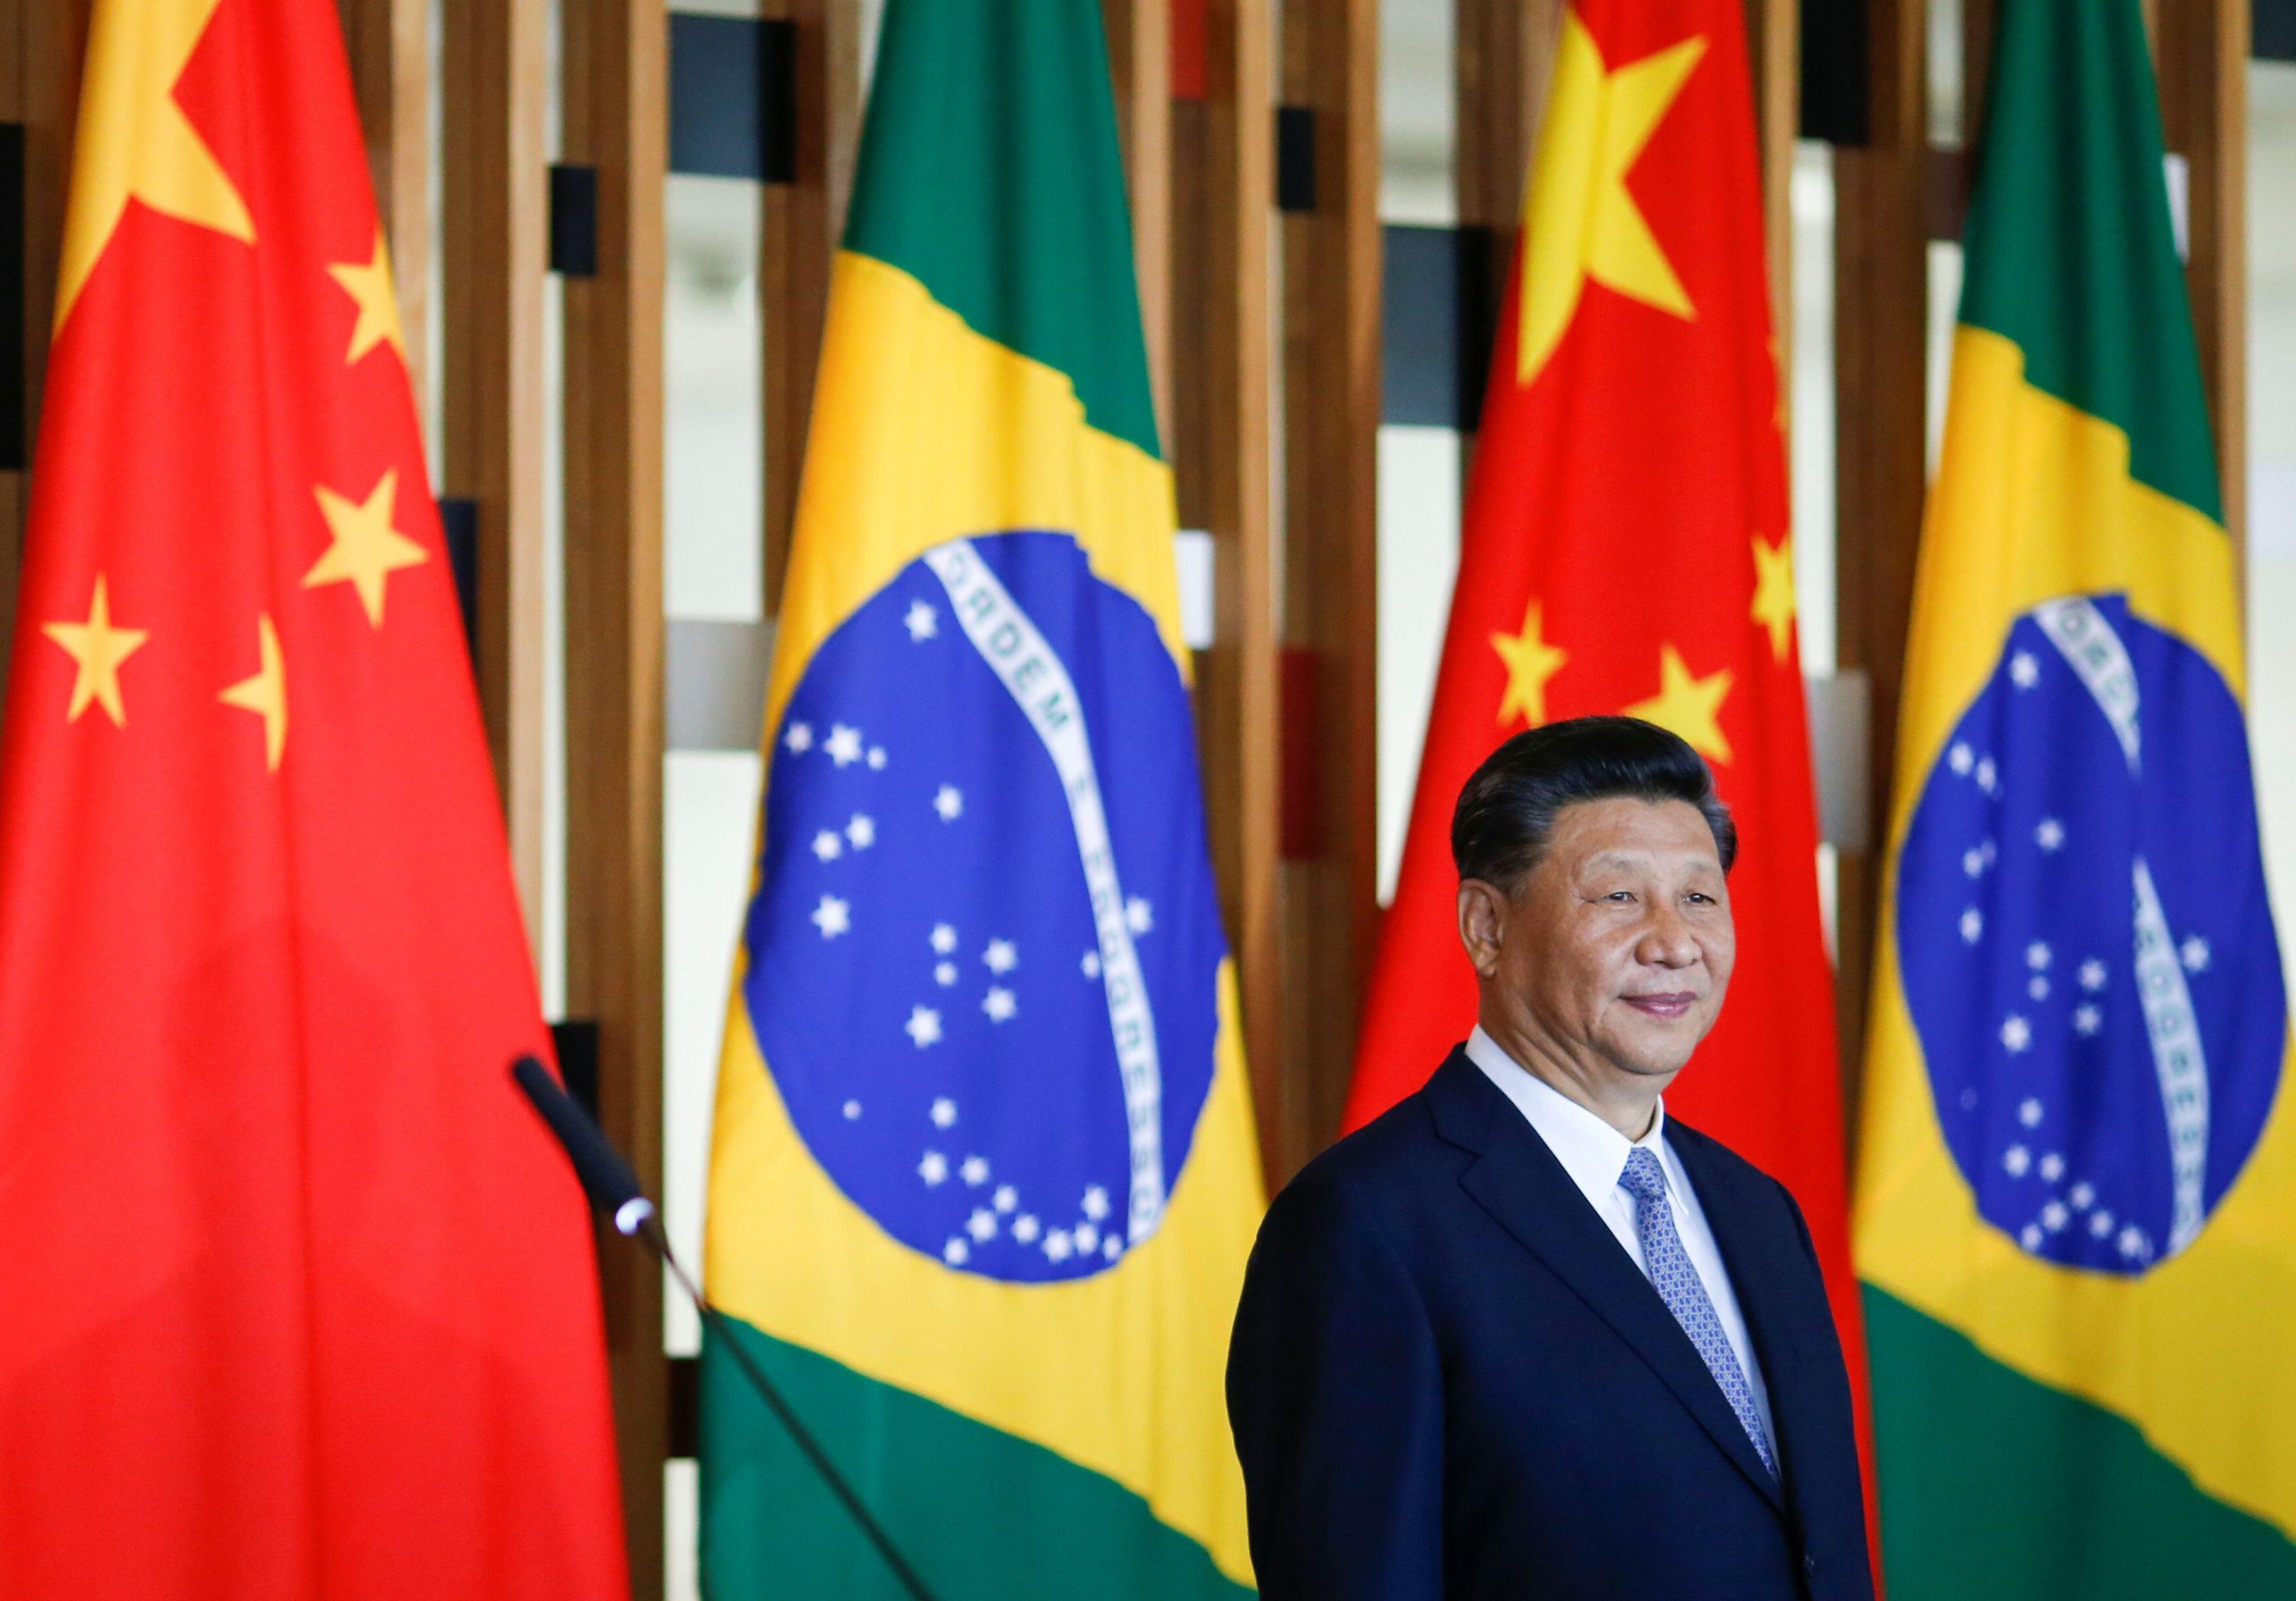 Xi Jinping em um evento em frente às bandeiras do Brasil e da China